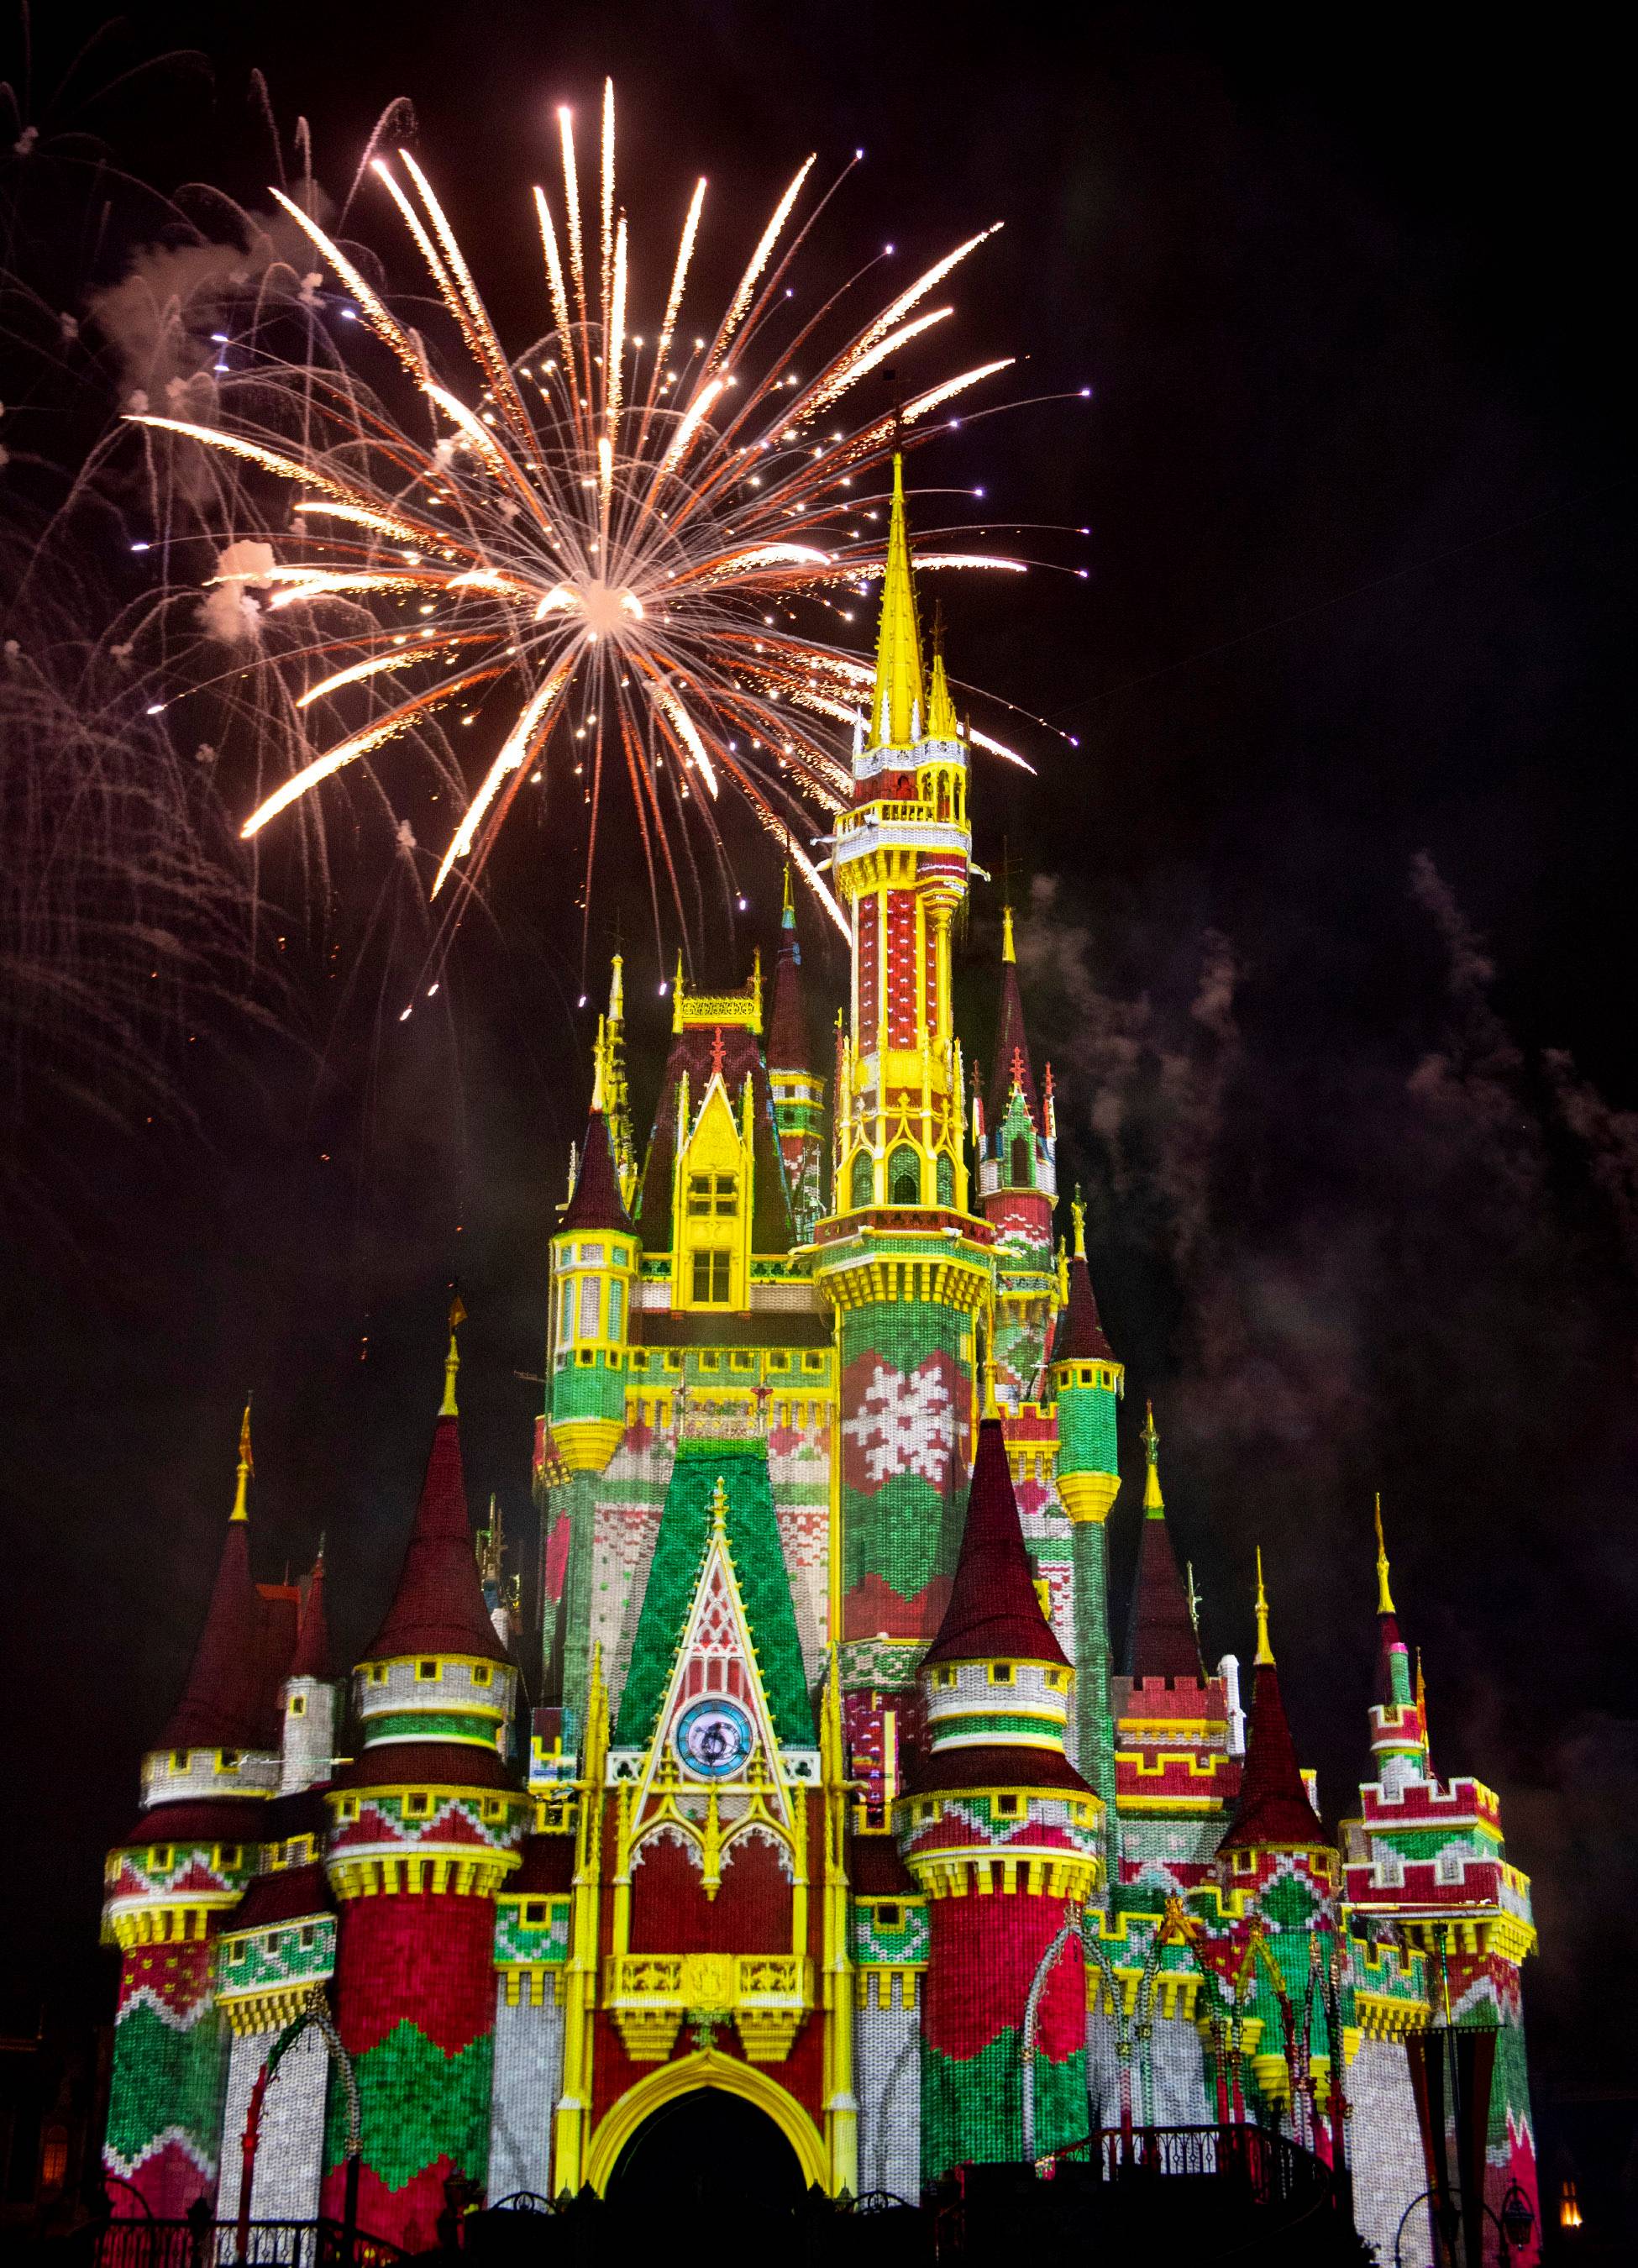 Minnie's Wonderful Christmastime Fireworks show